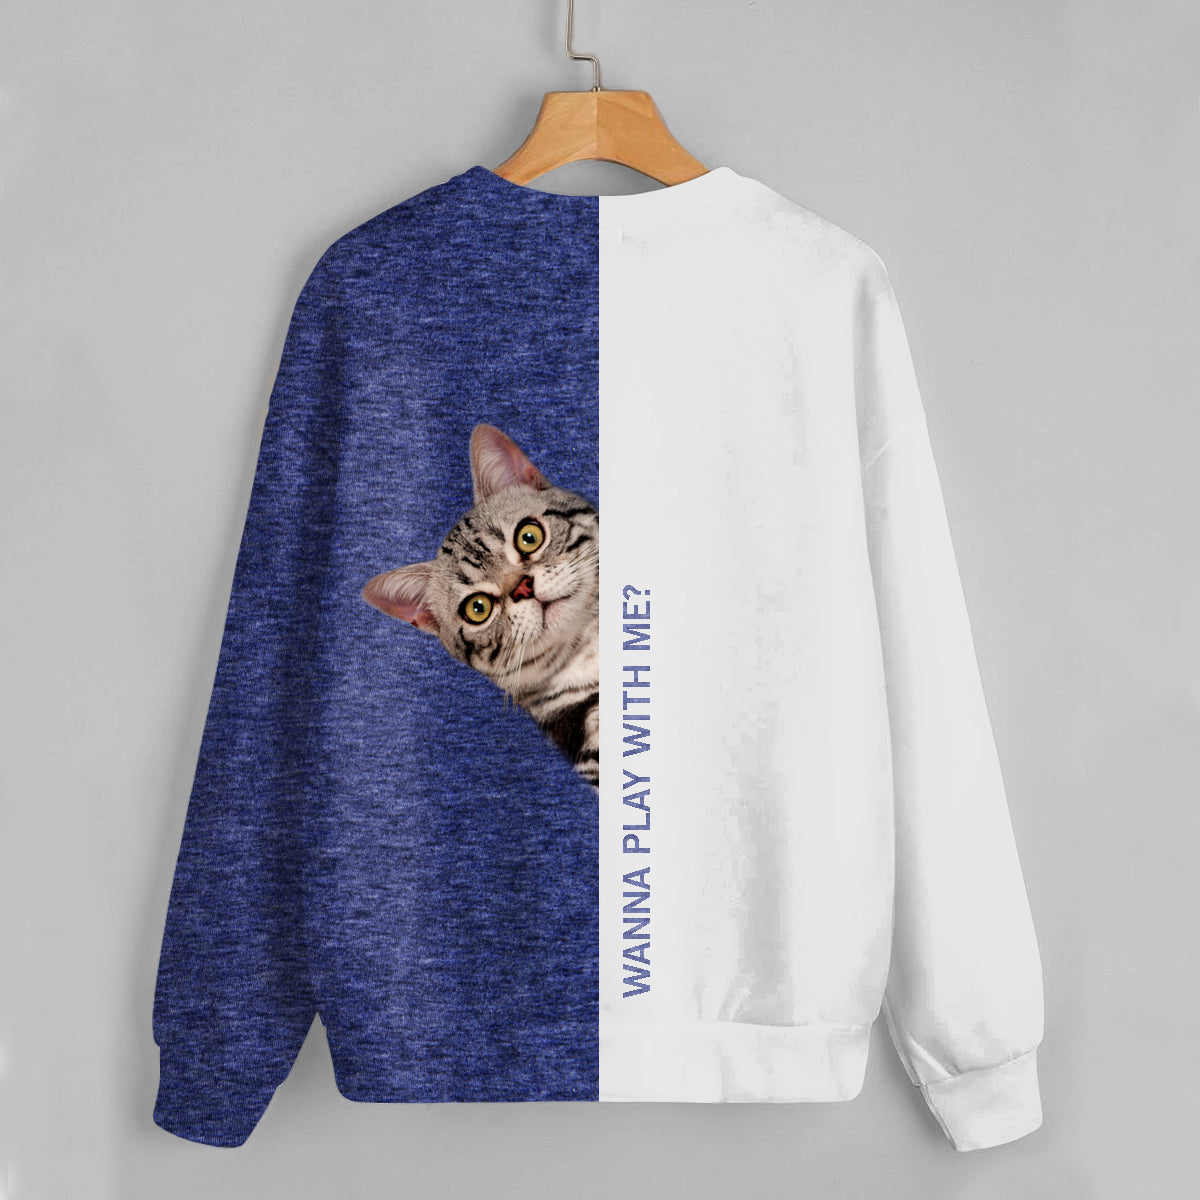 Lustige glückliche Zeit – American Shorthair Cat Sweatshirt V1